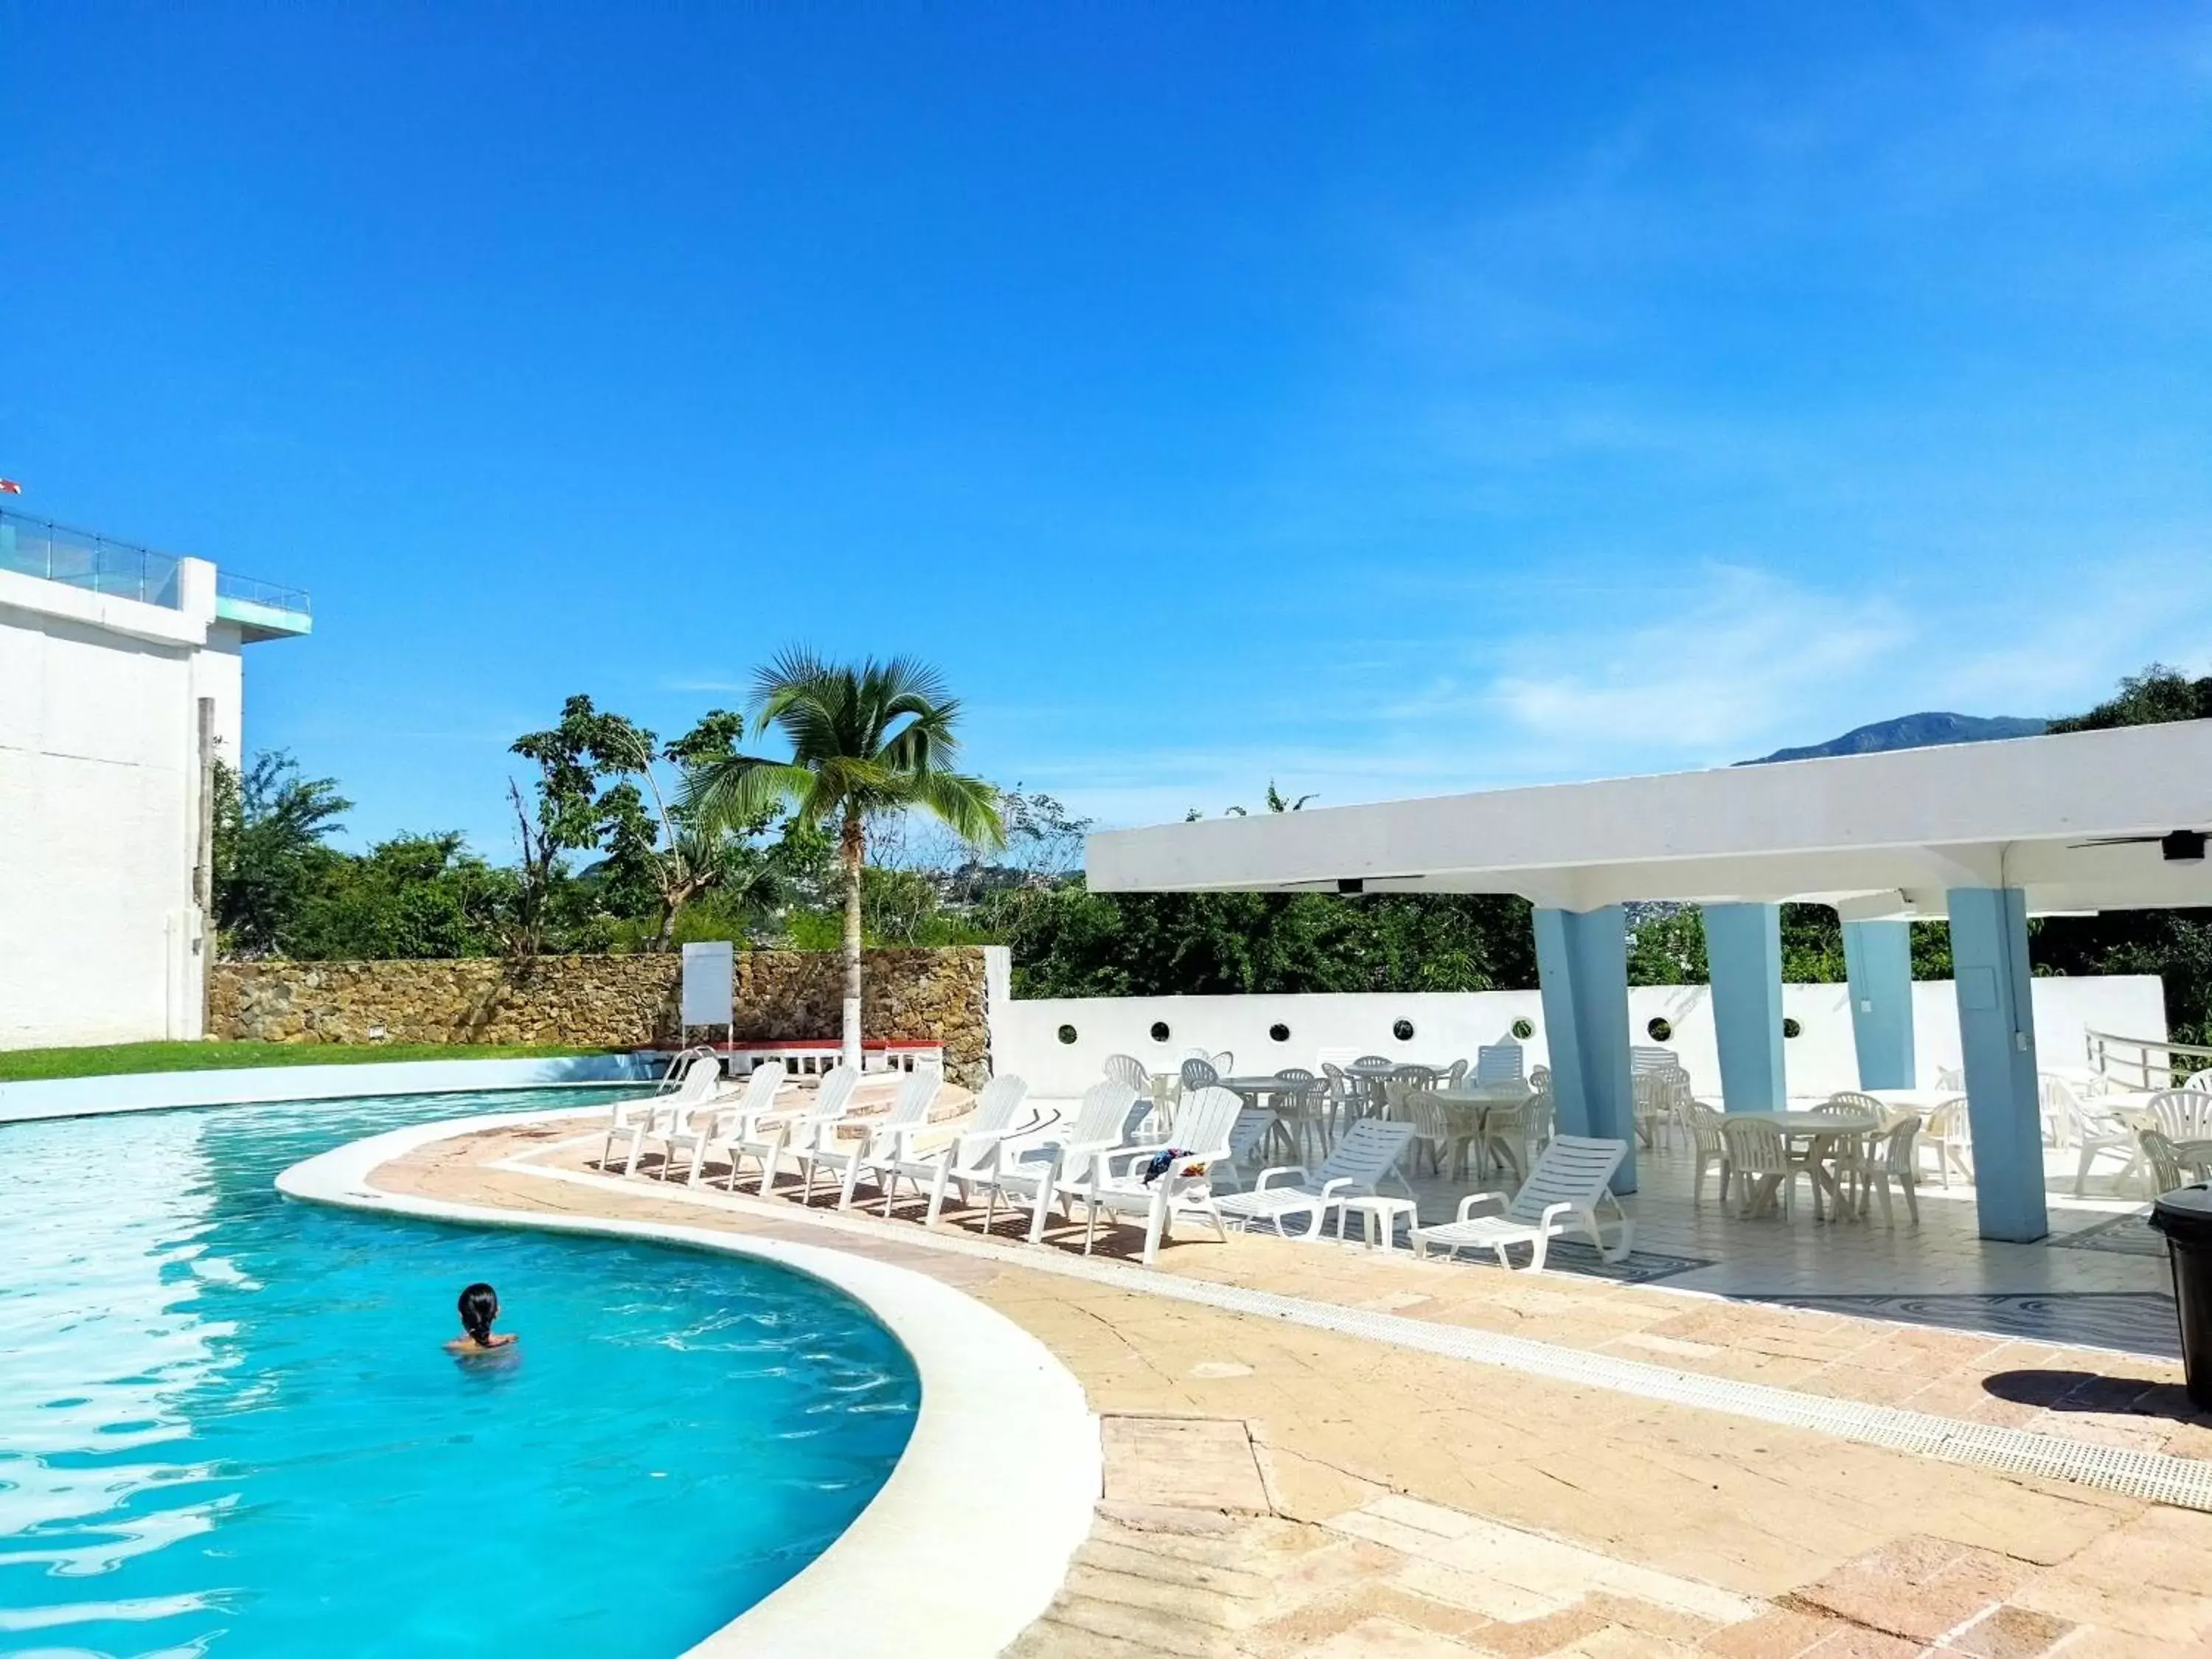 Off site, Swimming Pool in Hotel Aristos Acapulco